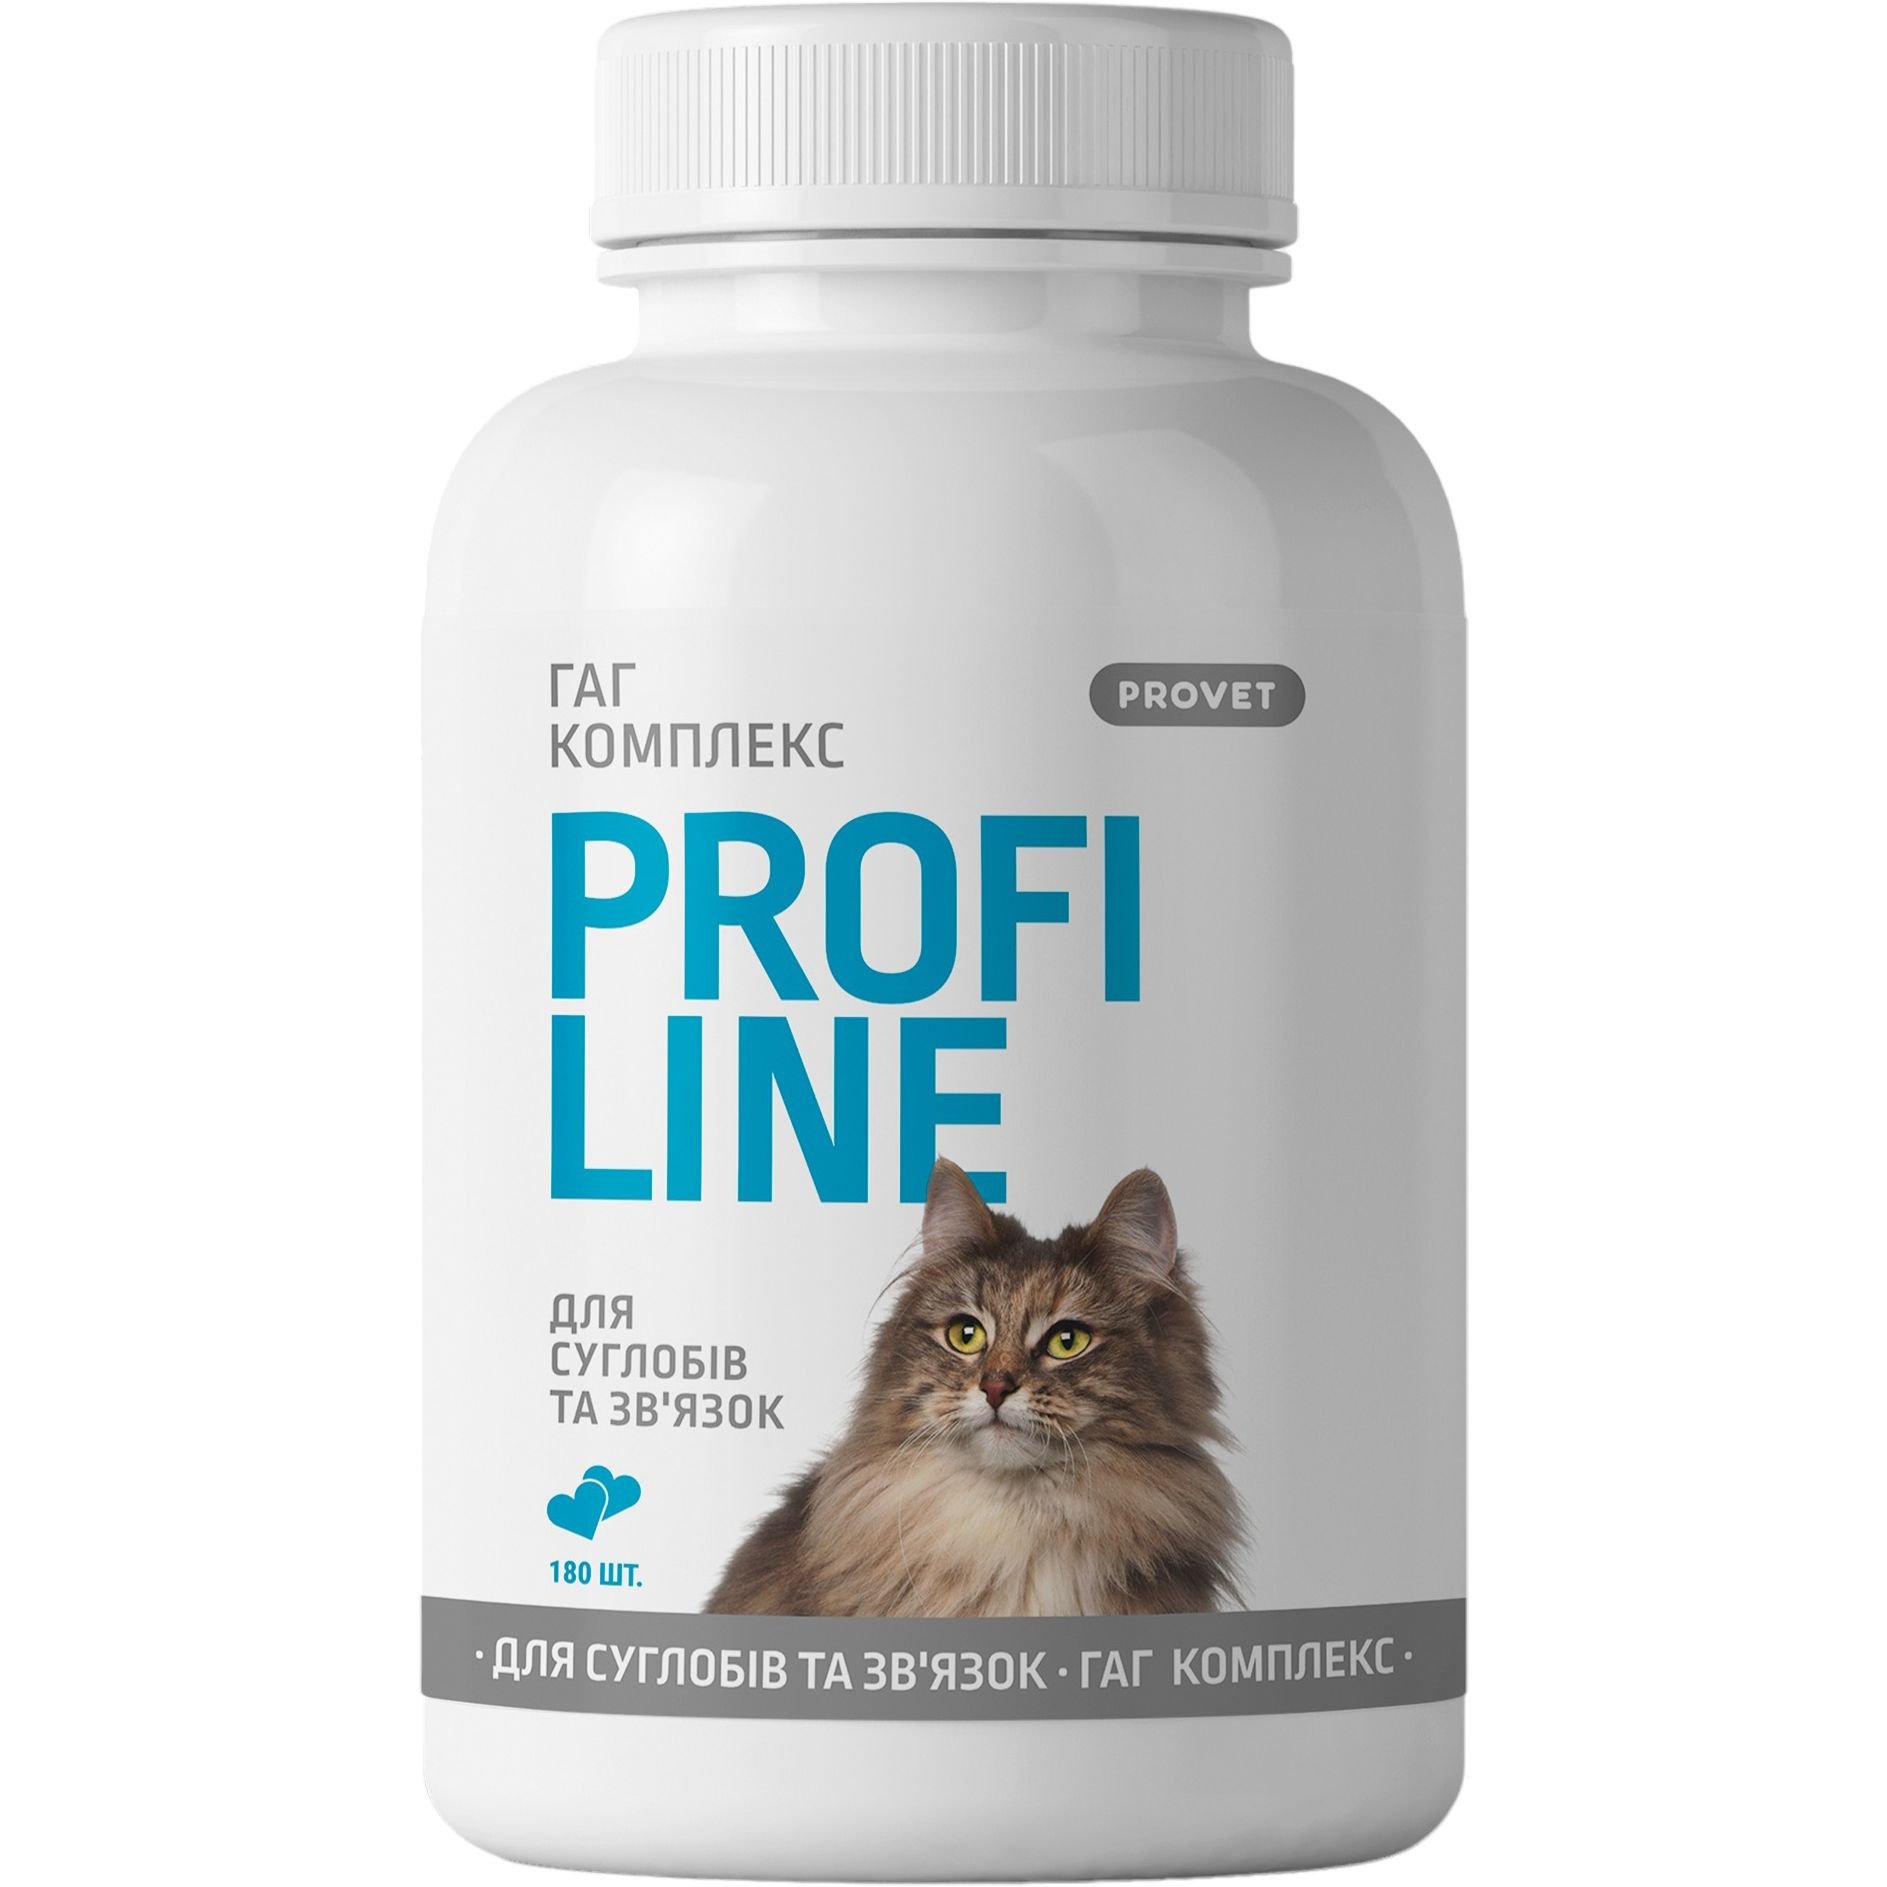 Вітаміни для котів ProVET Profiline Гаг комплекс для суглобів та зв'язок 180 таблеток - фото 1